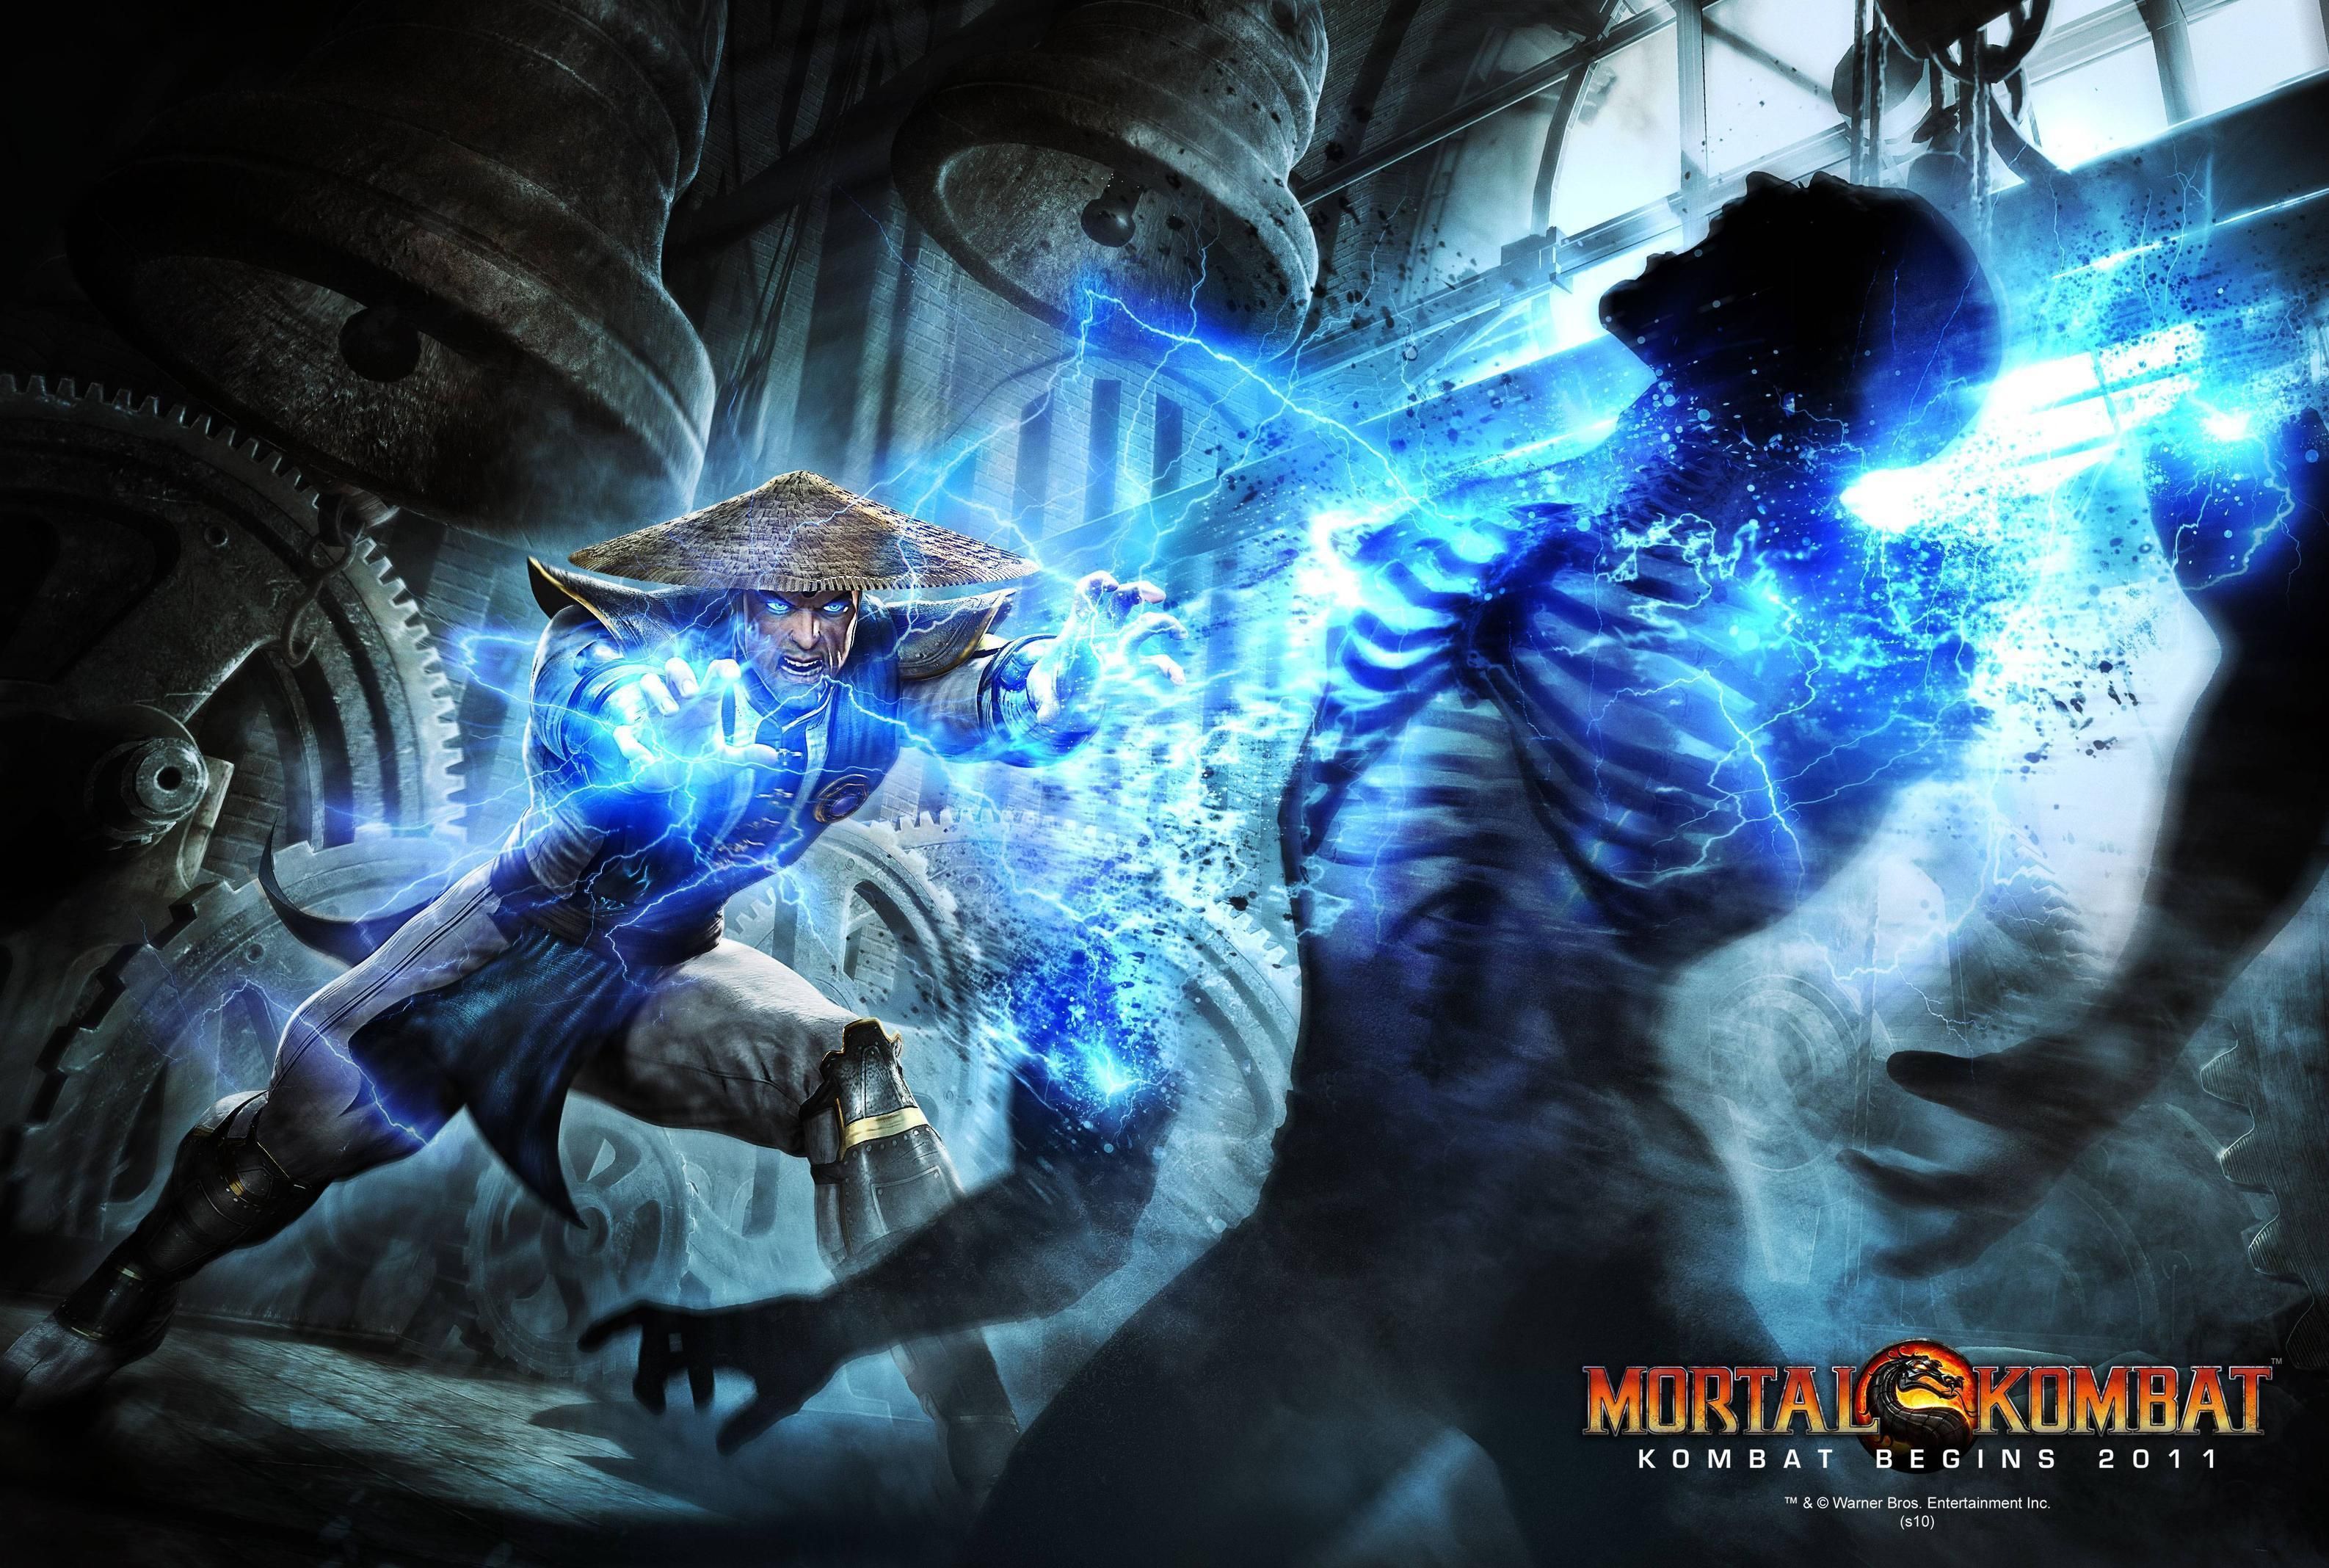 Mortal kombat games .com